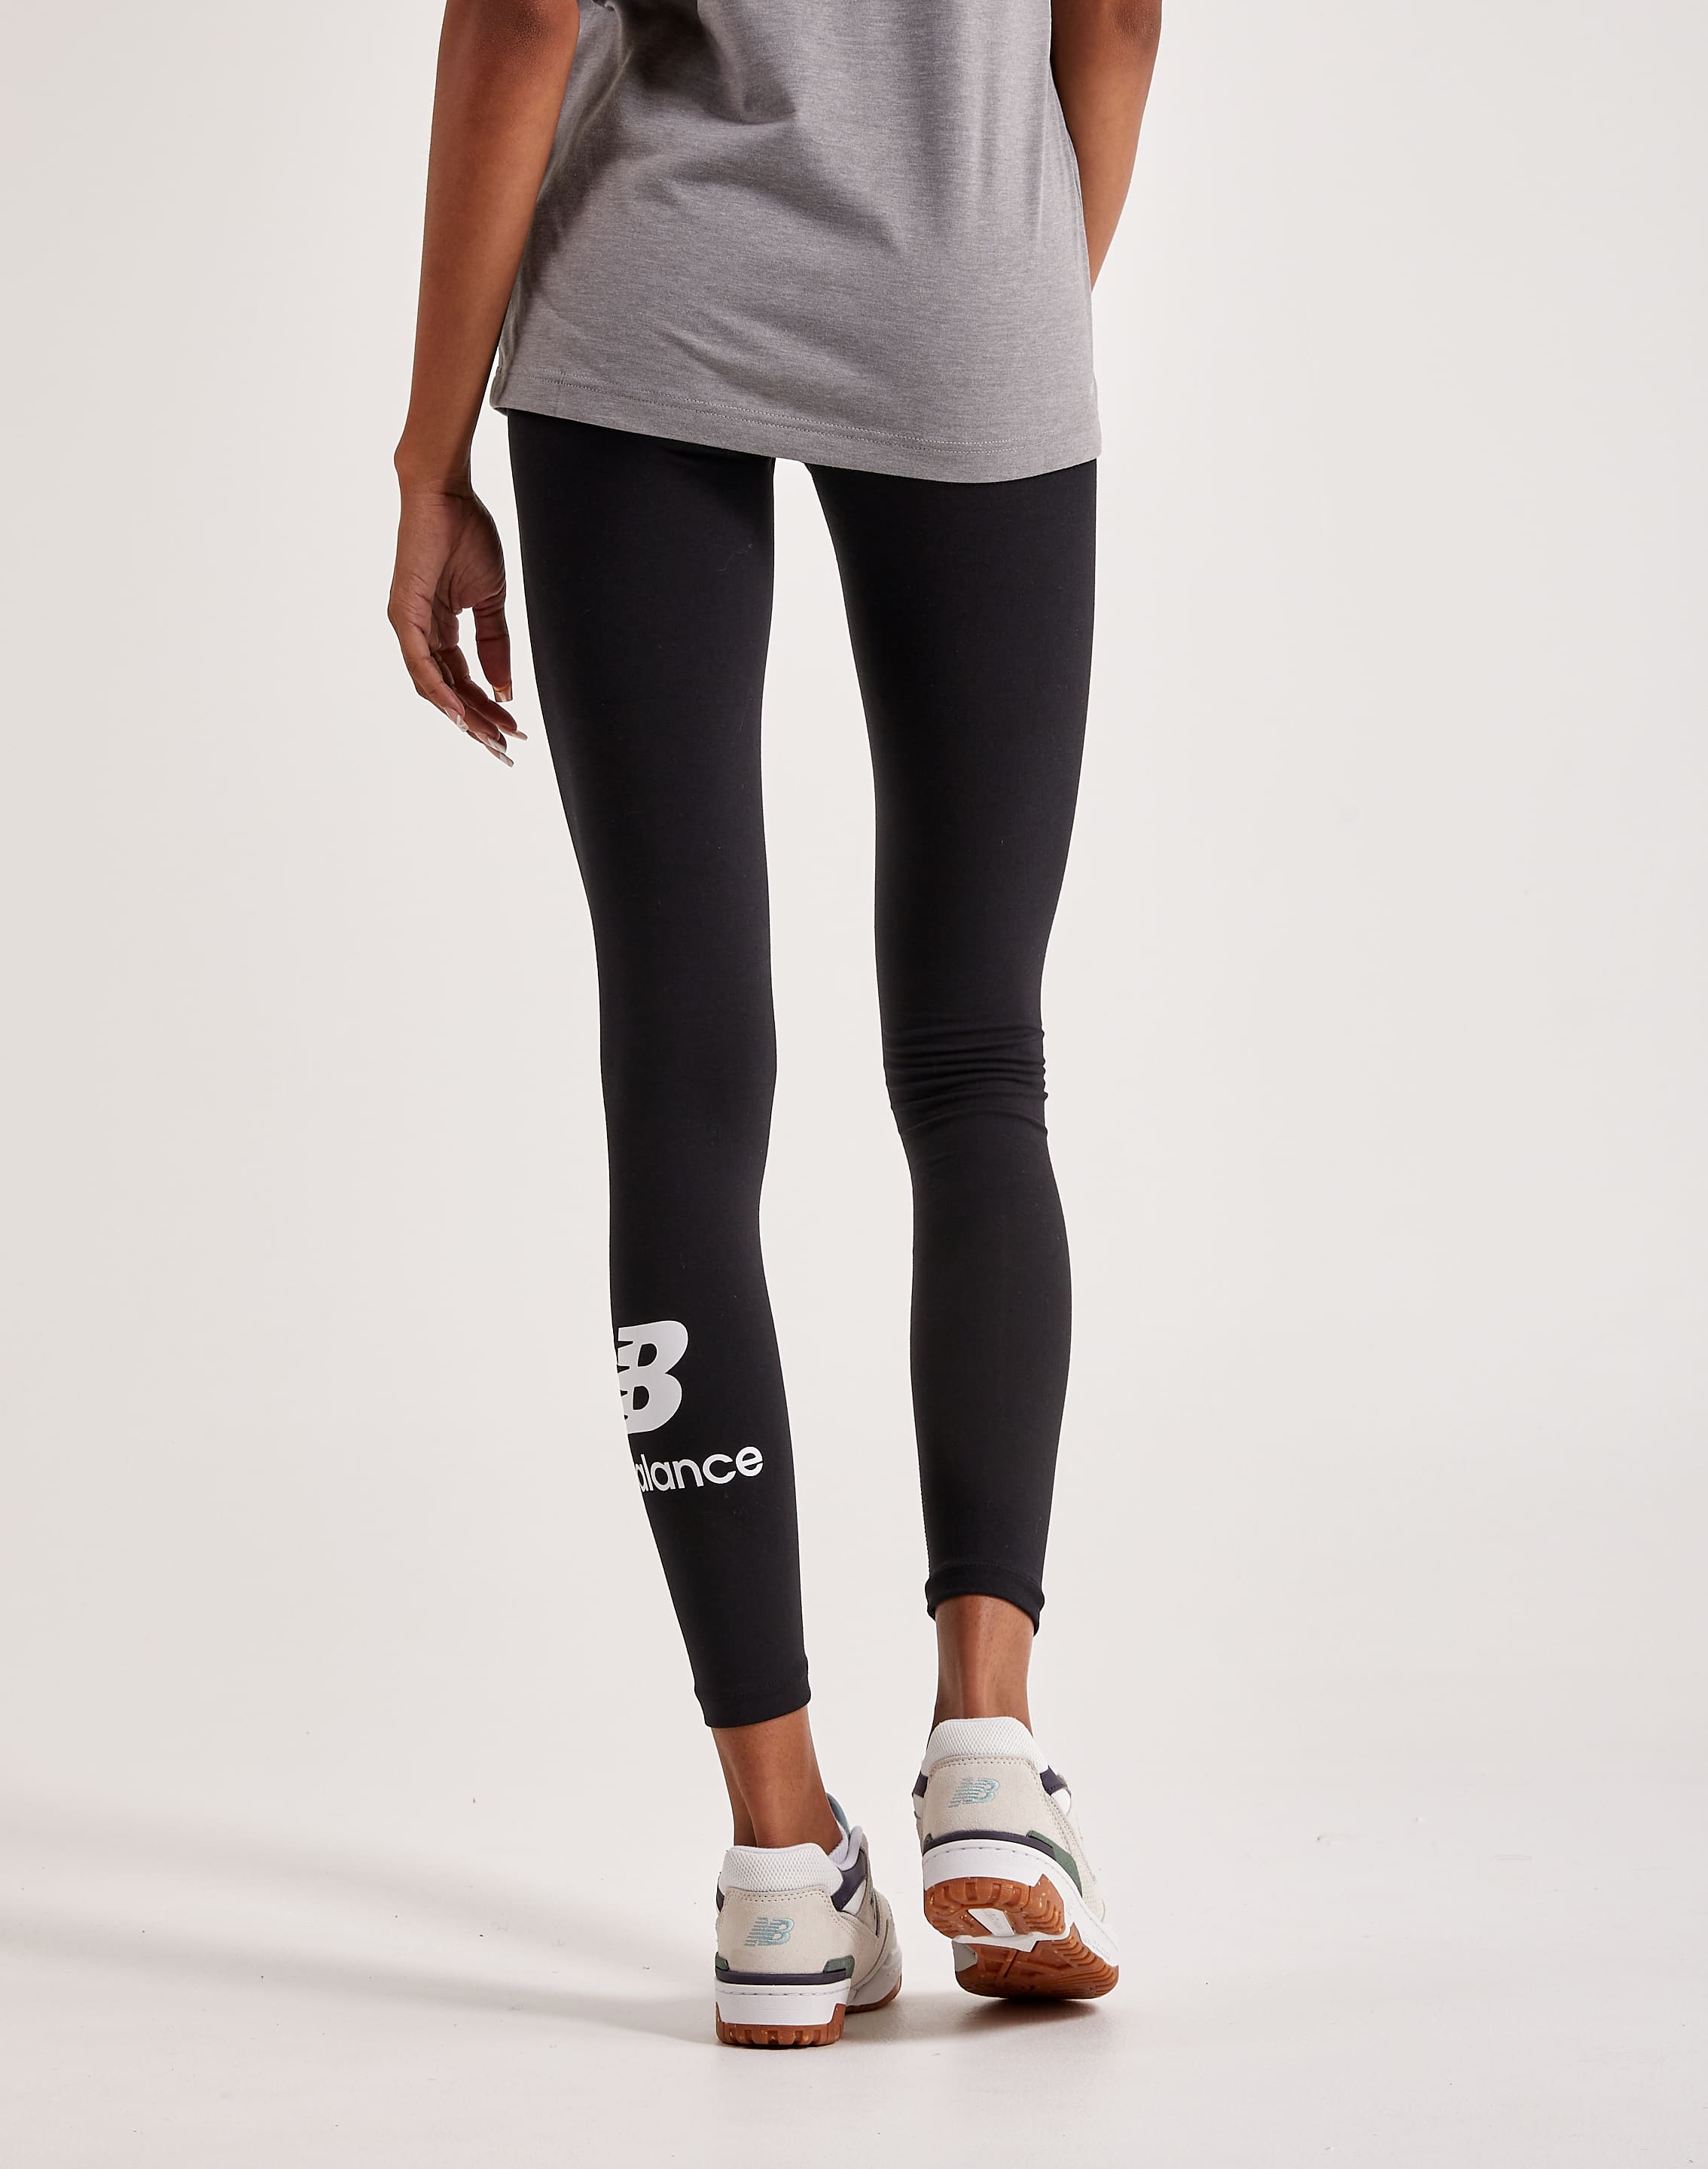 NB New Balance Women's LEGGINGS for Exercising Grey & Black 💥 G5241